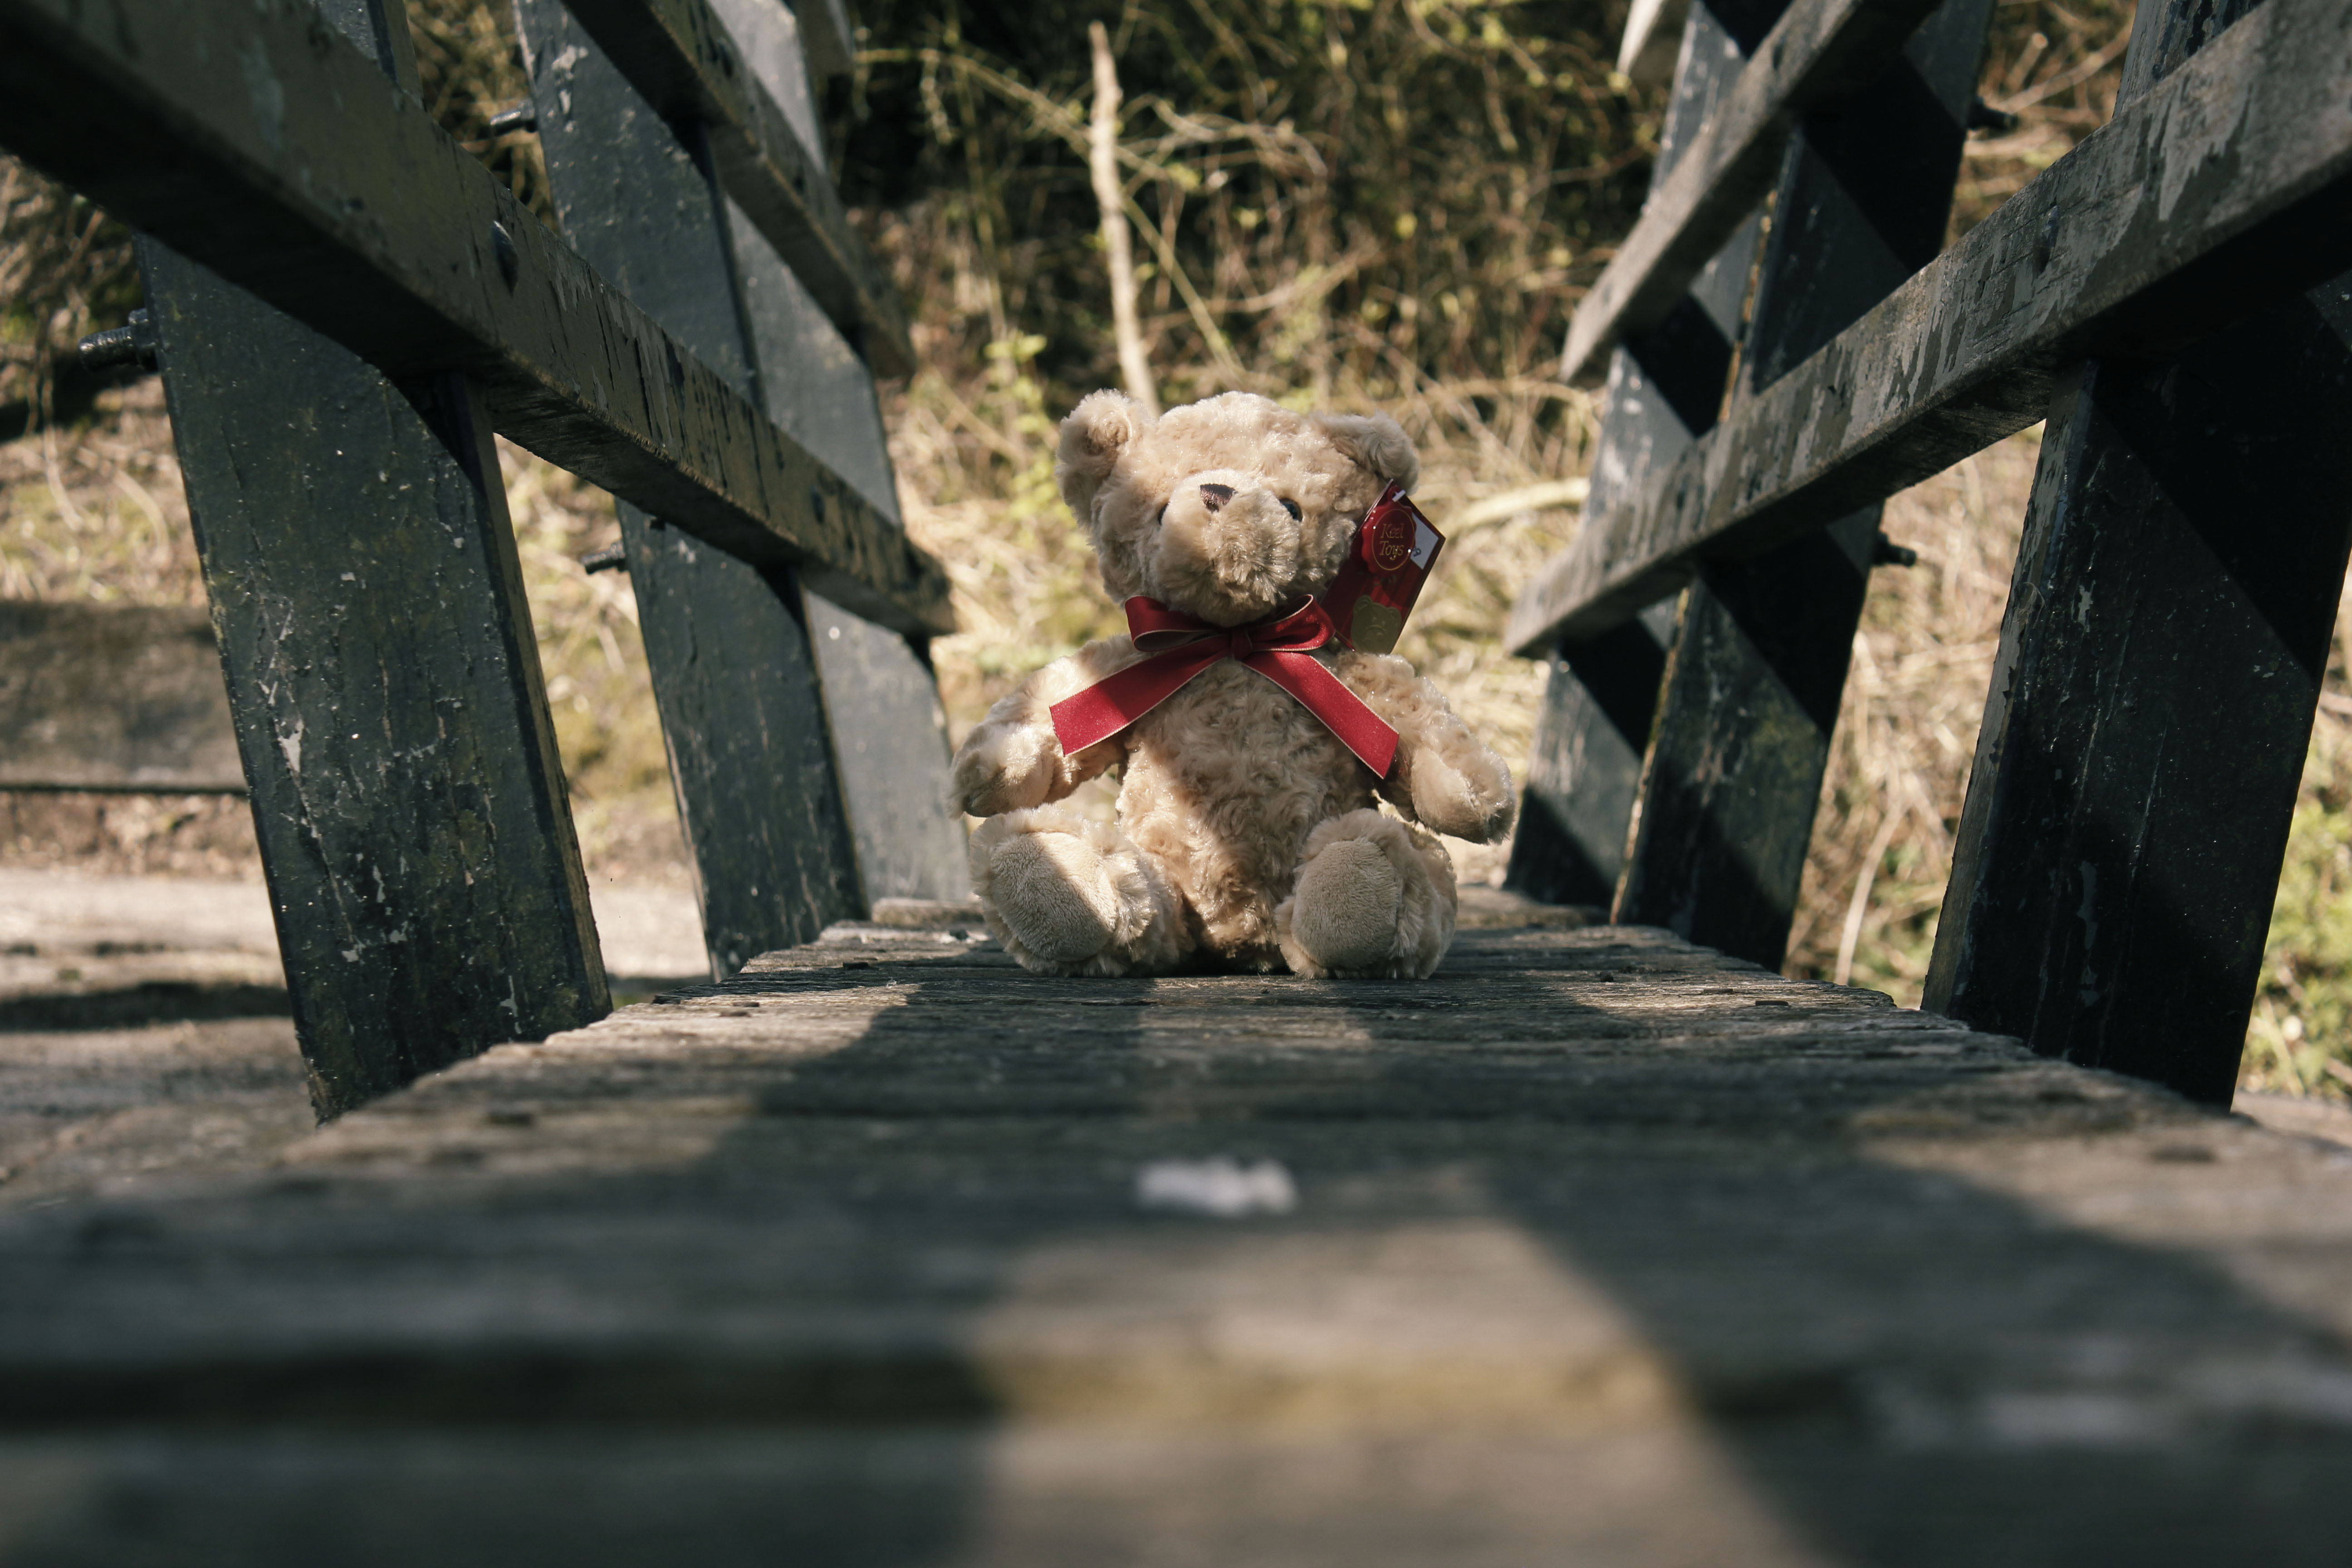 Bridge Teddy by bleak